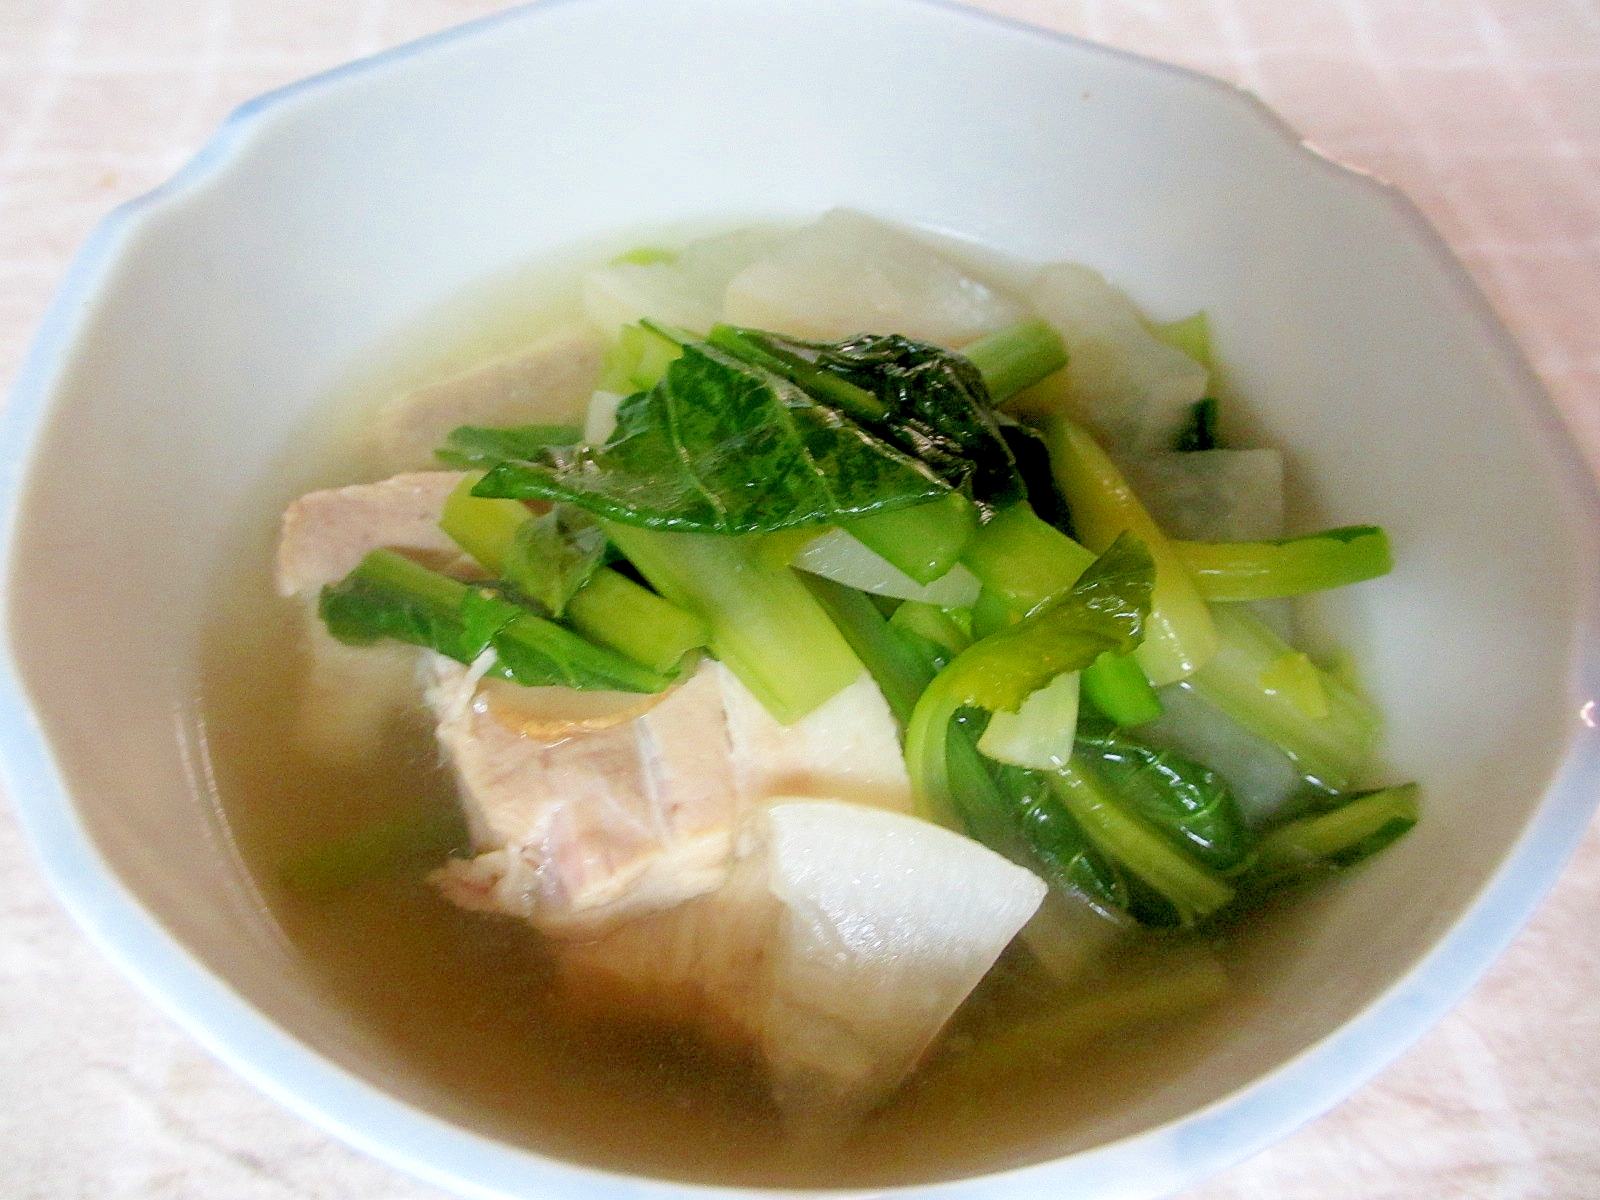 豚バラ、大根、小松菜の和風スープ